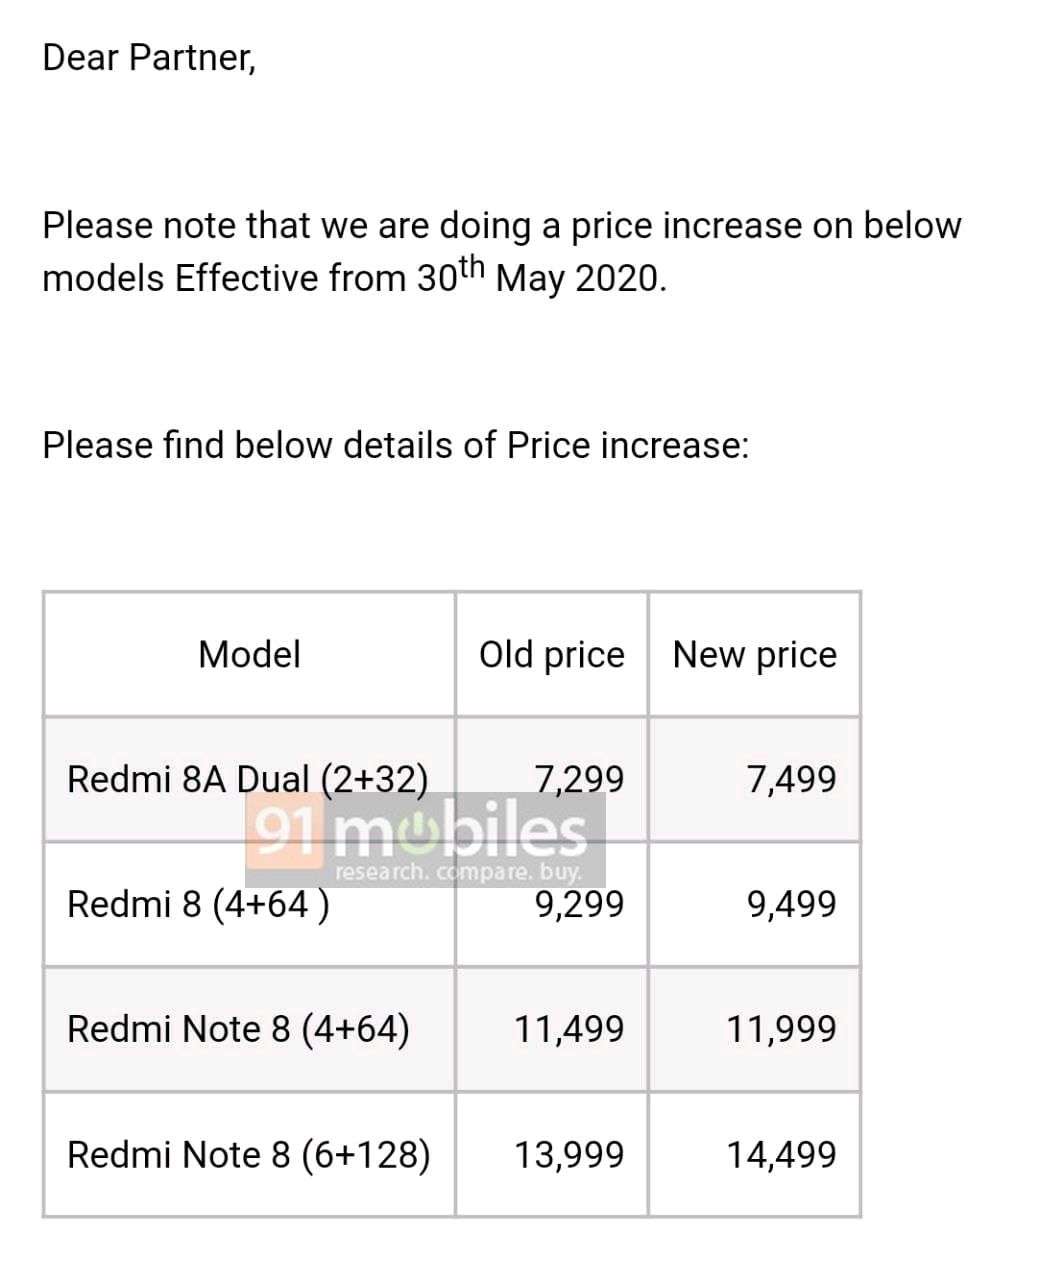 Redmi 8, Redmi 8A Dual, Redmi Note 8 new prices